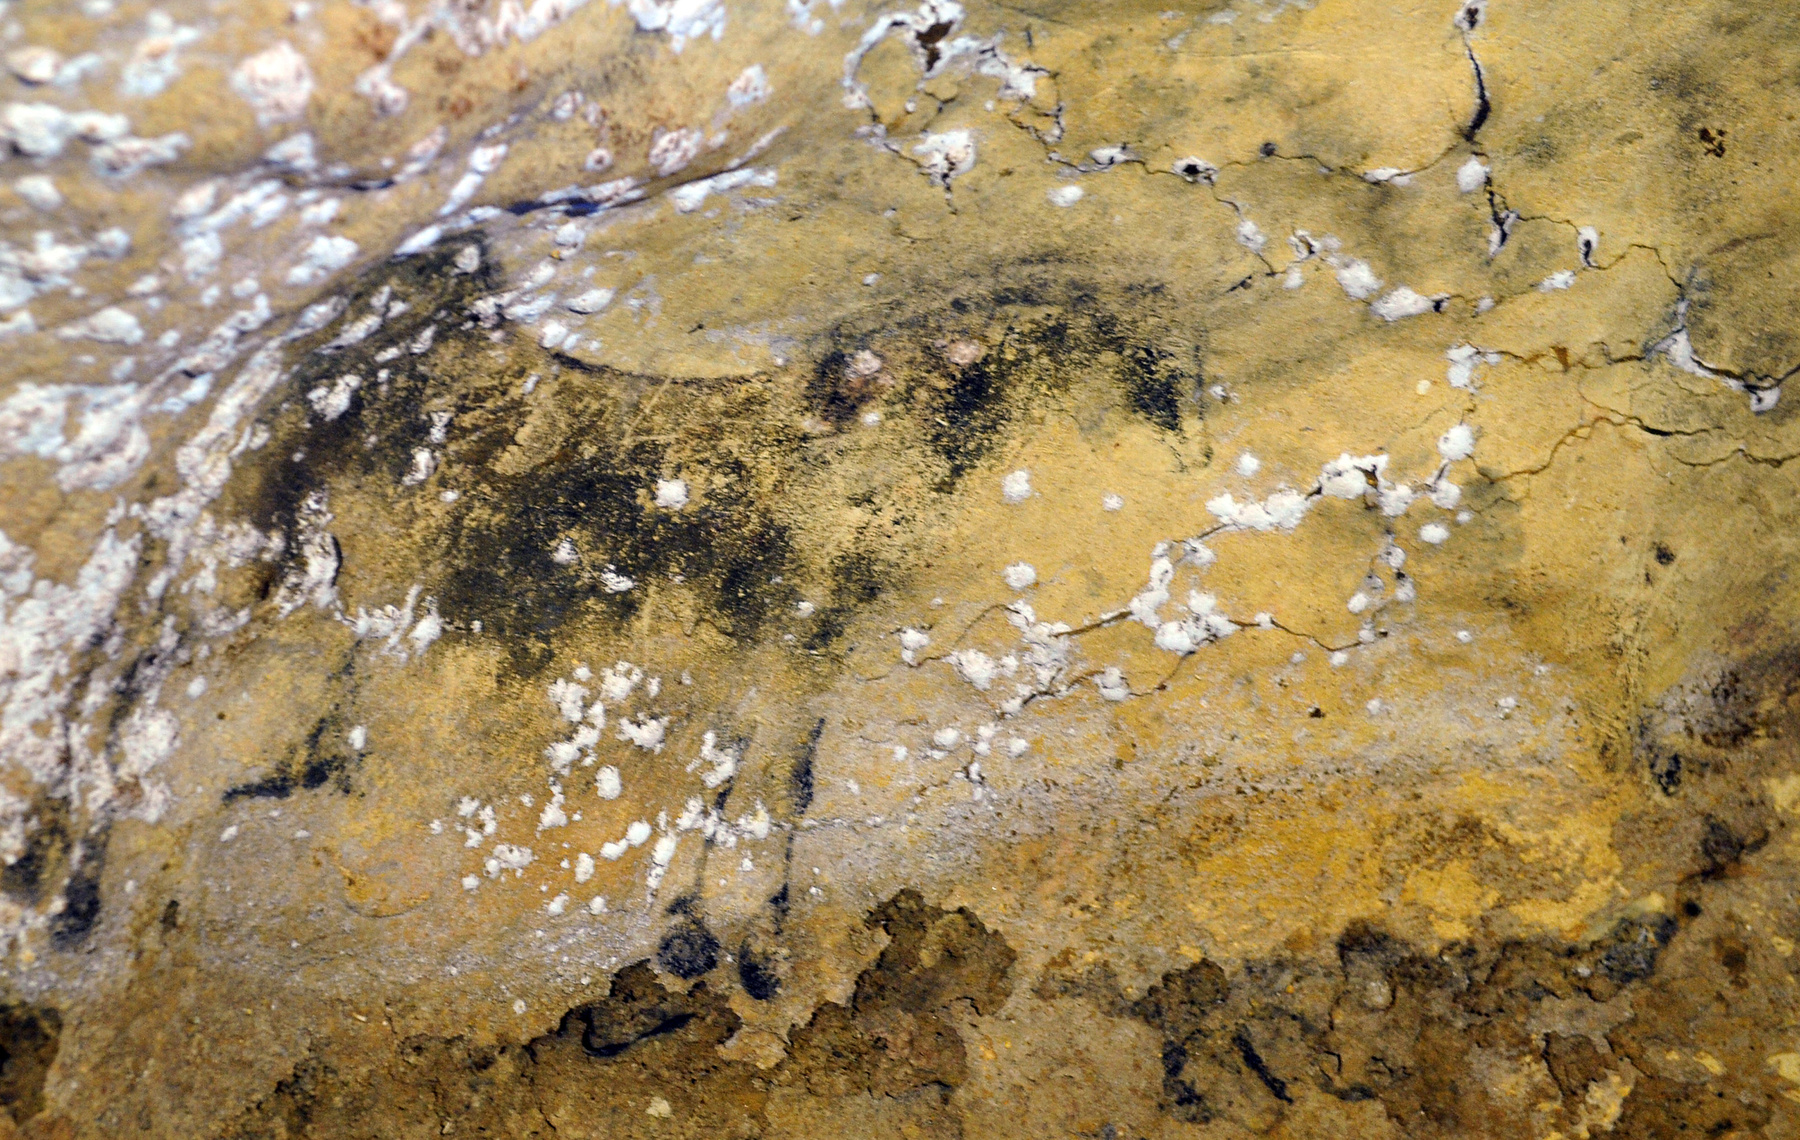 Restaurátorok állítják helyre a hányattatott sorsú barlang évezredes rajzait.